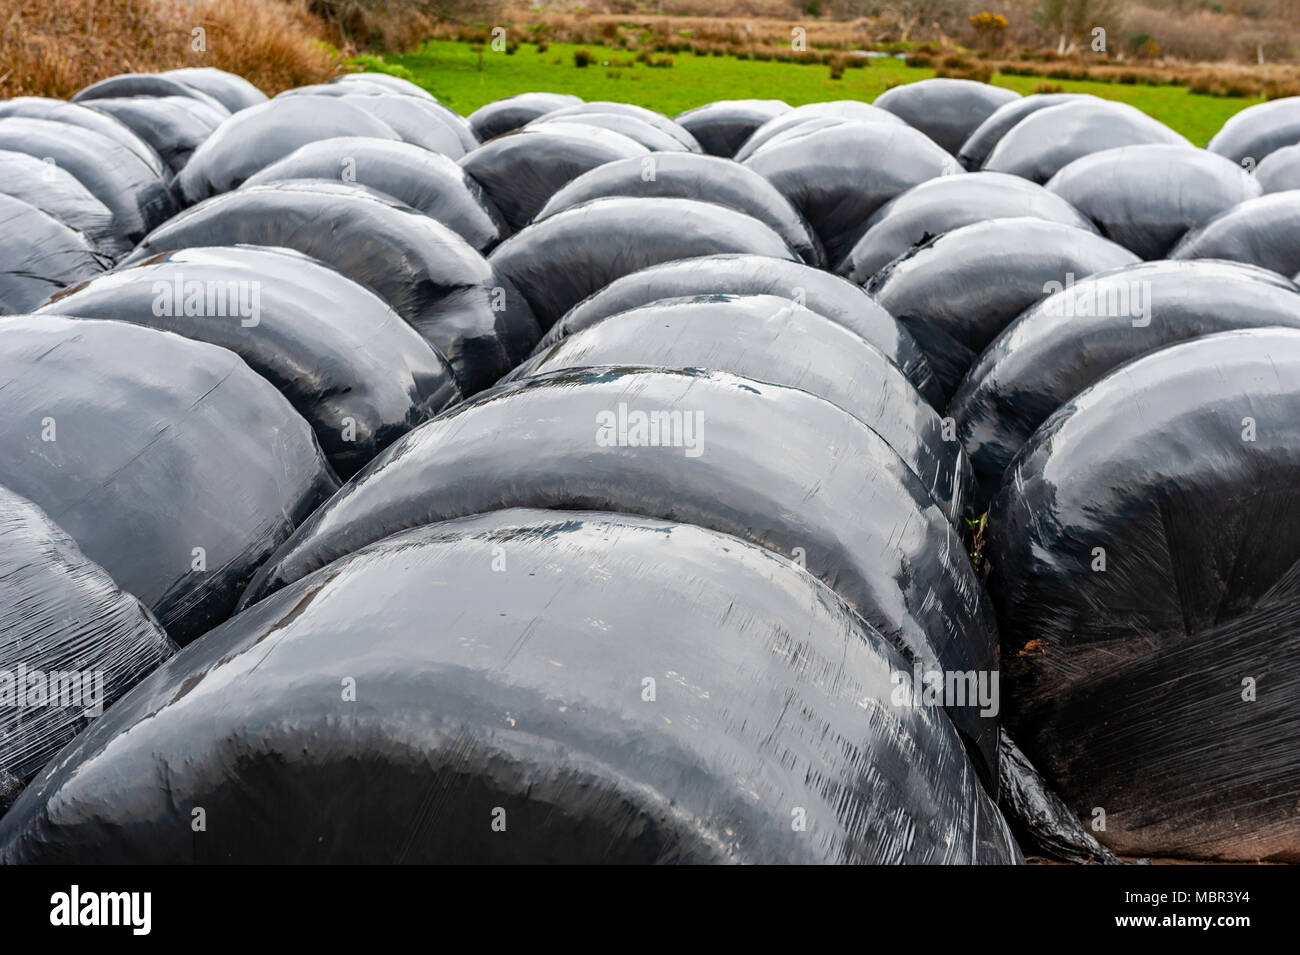 Bügel von Futtermitteln in einem Feld während der futtermittelkrise in County Cork, Irland. Stockfoto